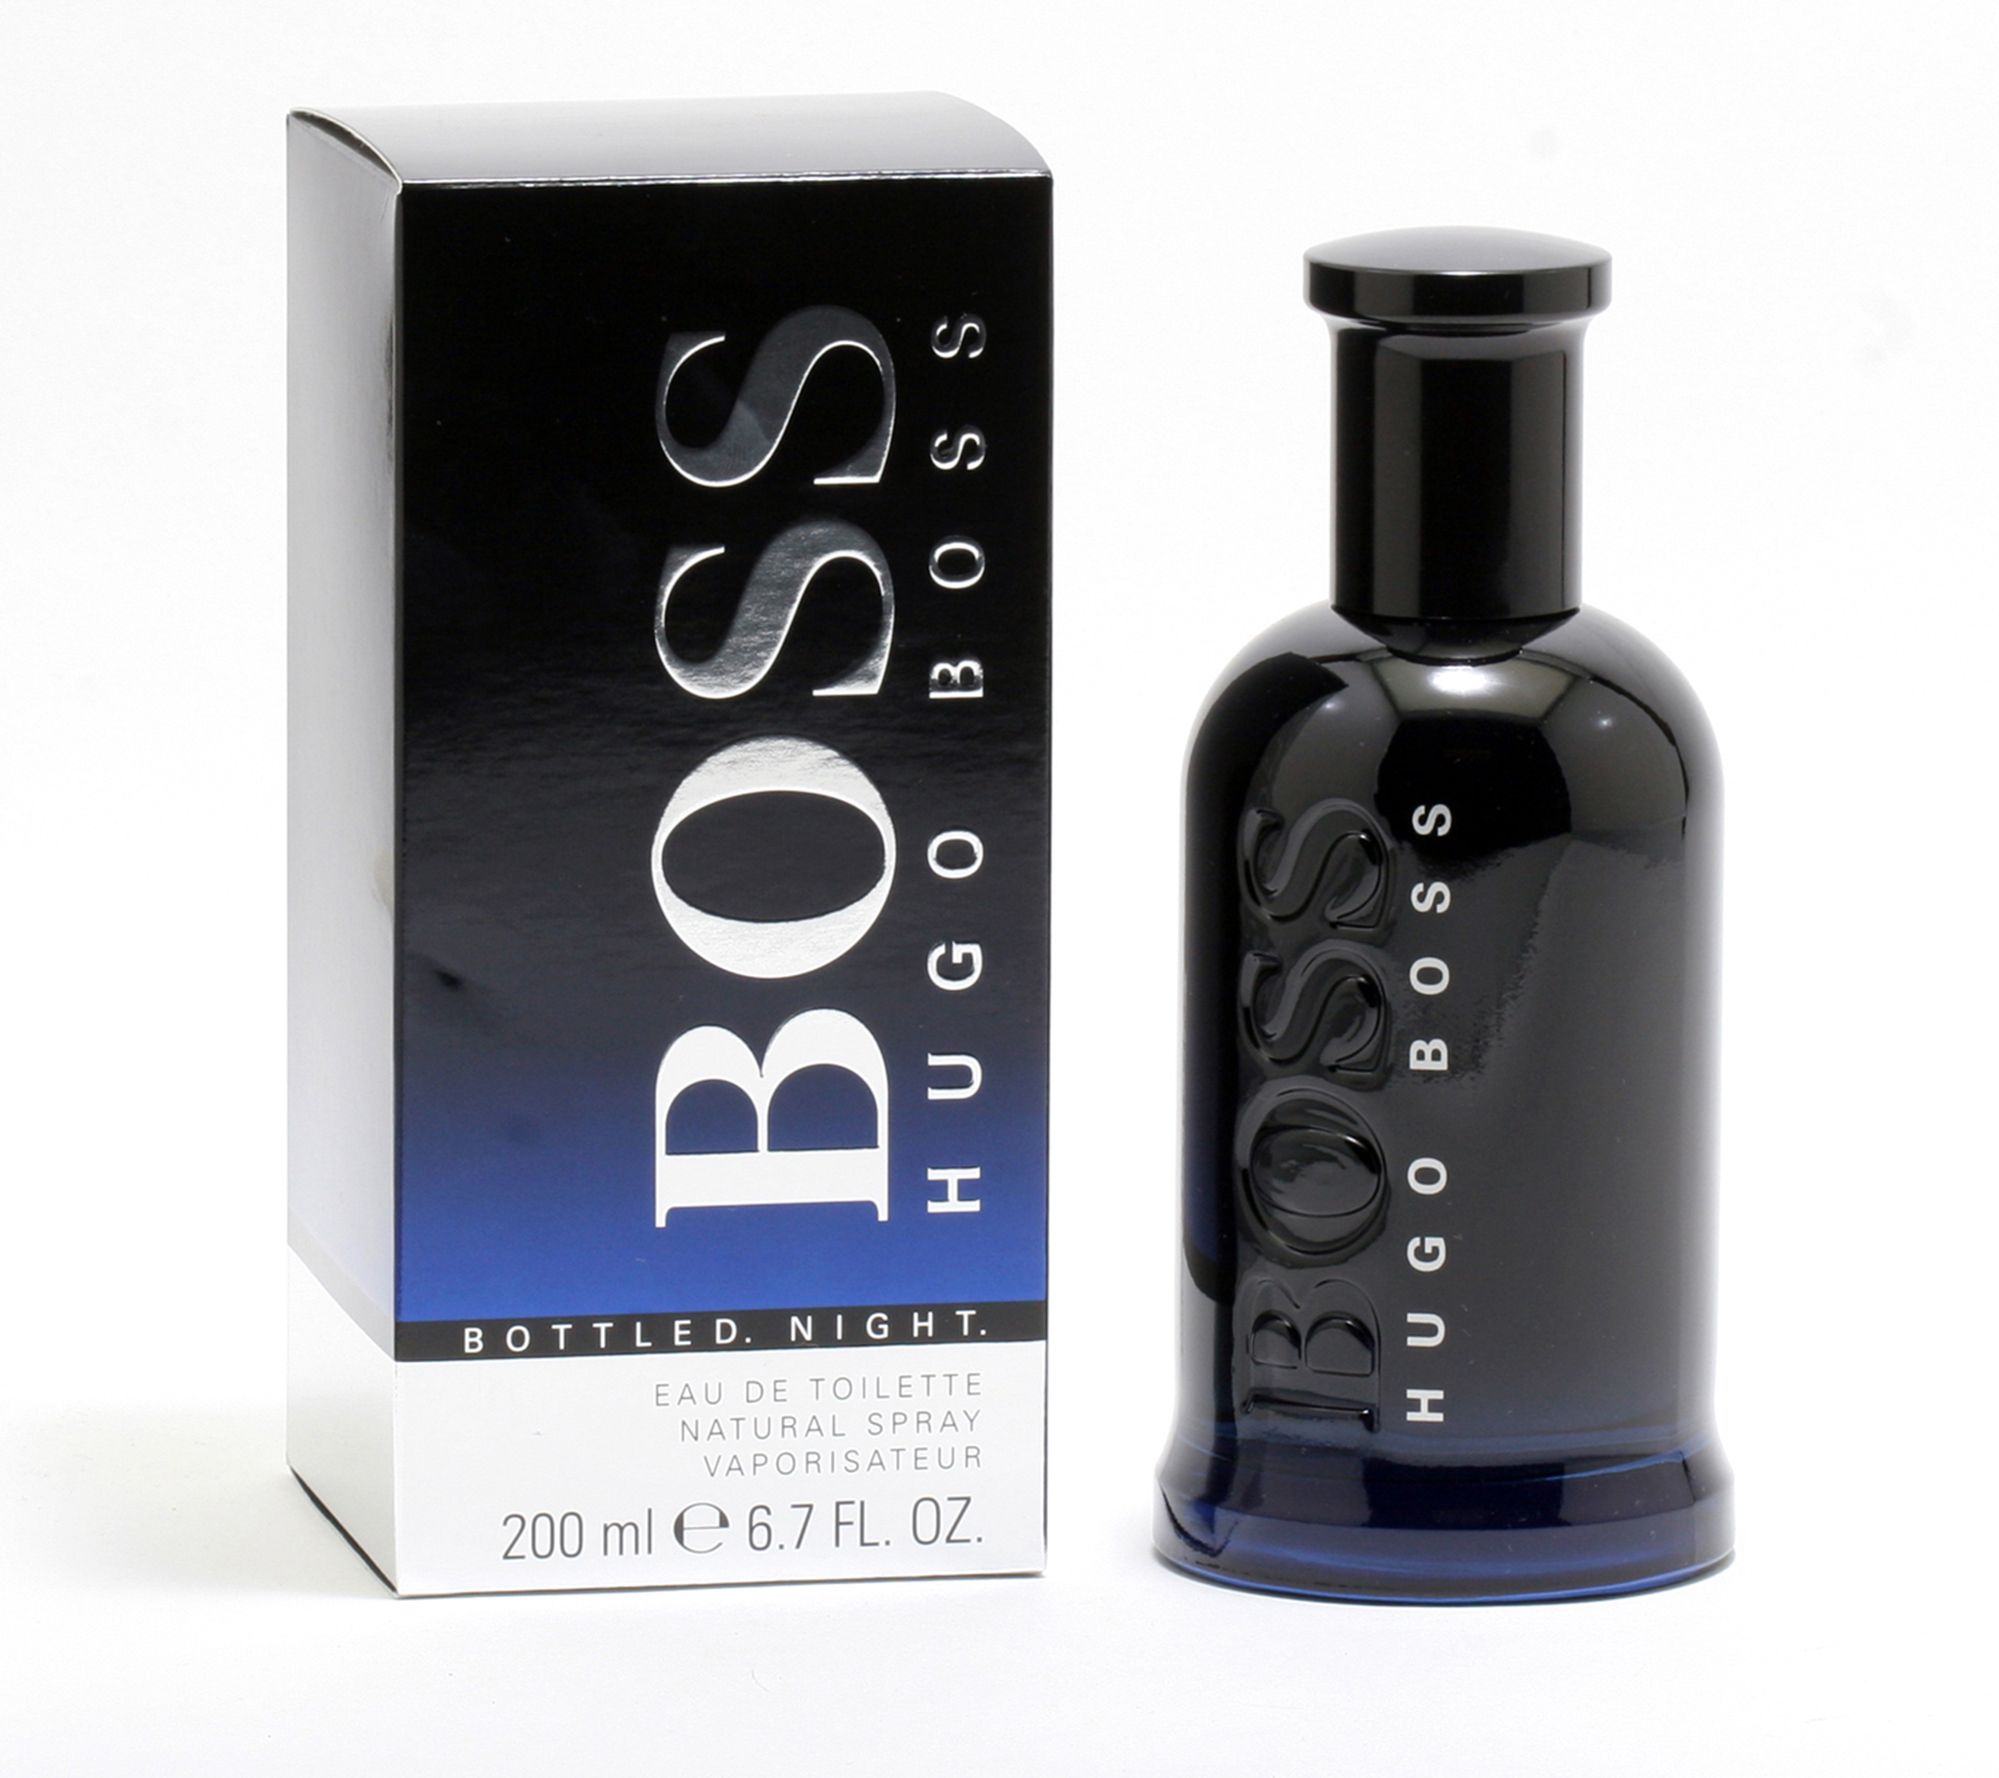 Хуго босс ботлед. Boss "Hugo Boss Bottled Night" 100 ml. Hugo Boss - Bottled Night 100мл. Hugo Boss Bottled Night 100 ml. Духи Hugo Boss Bottled Night.